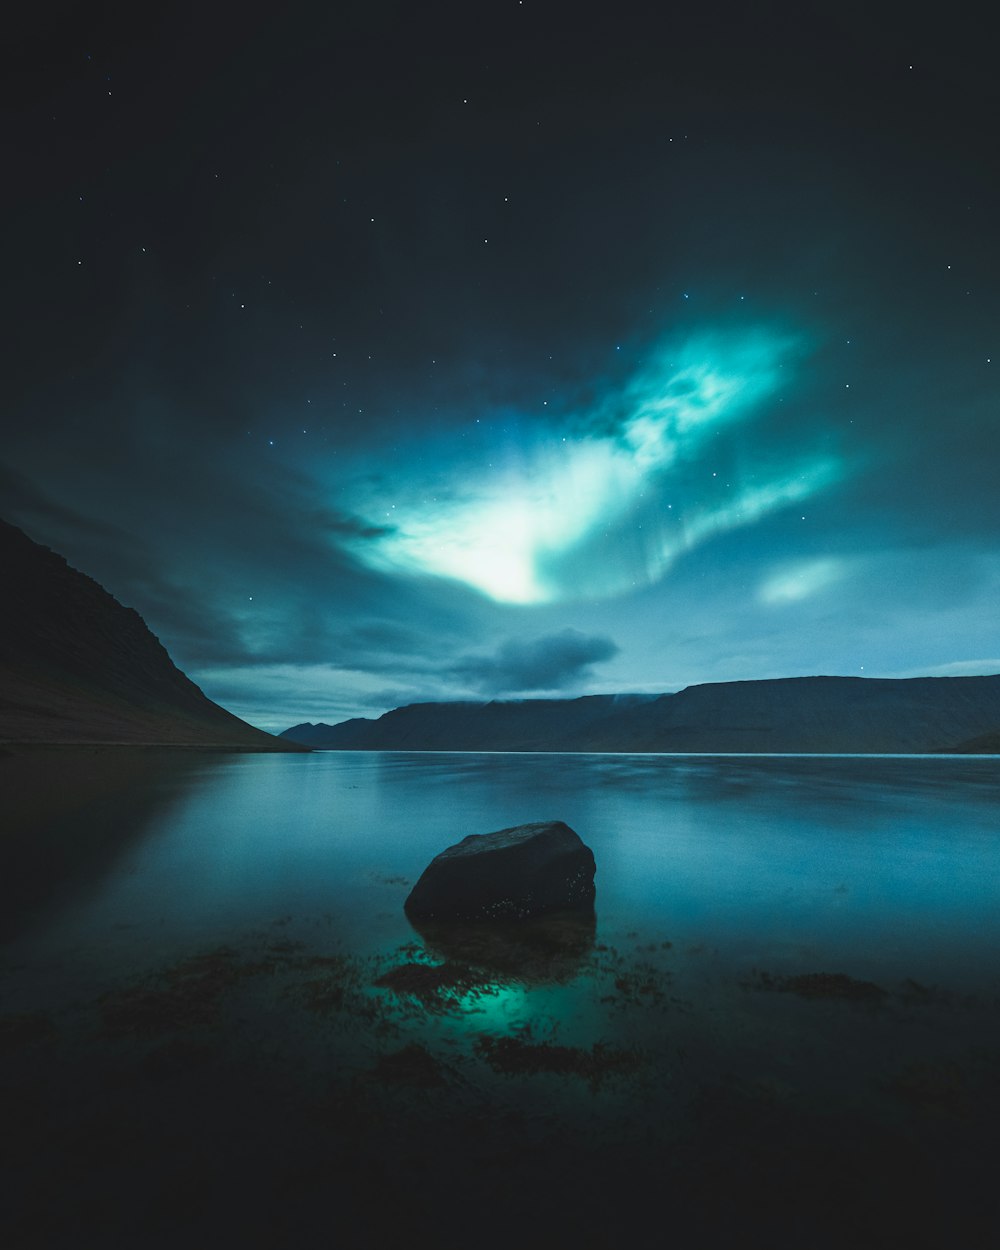 Landschaftsfotografie von Aurora Borealis bei Nacht